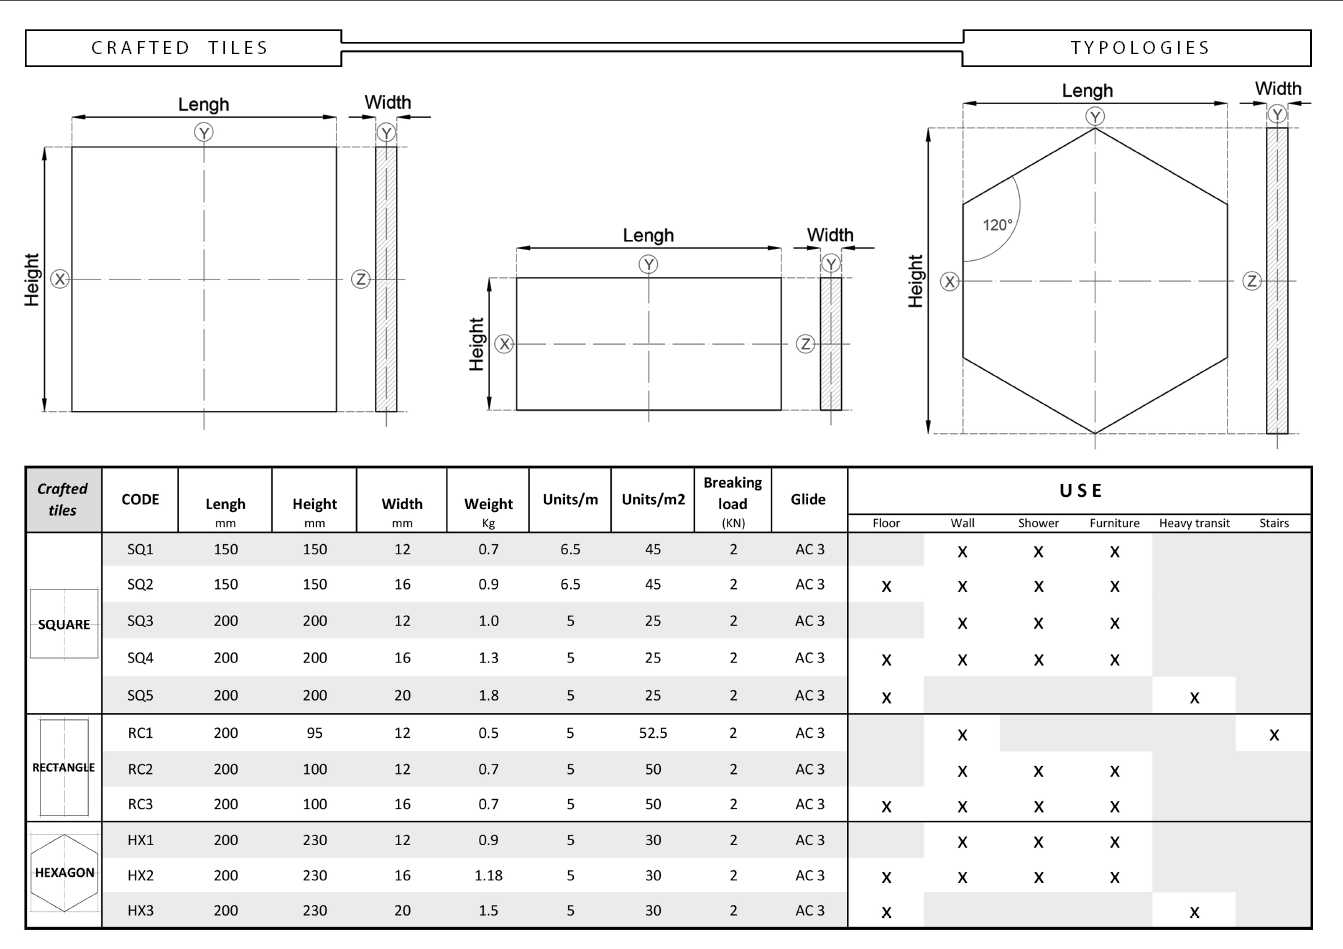 Technische Eigenschaften der hydraulischen Dachziegel